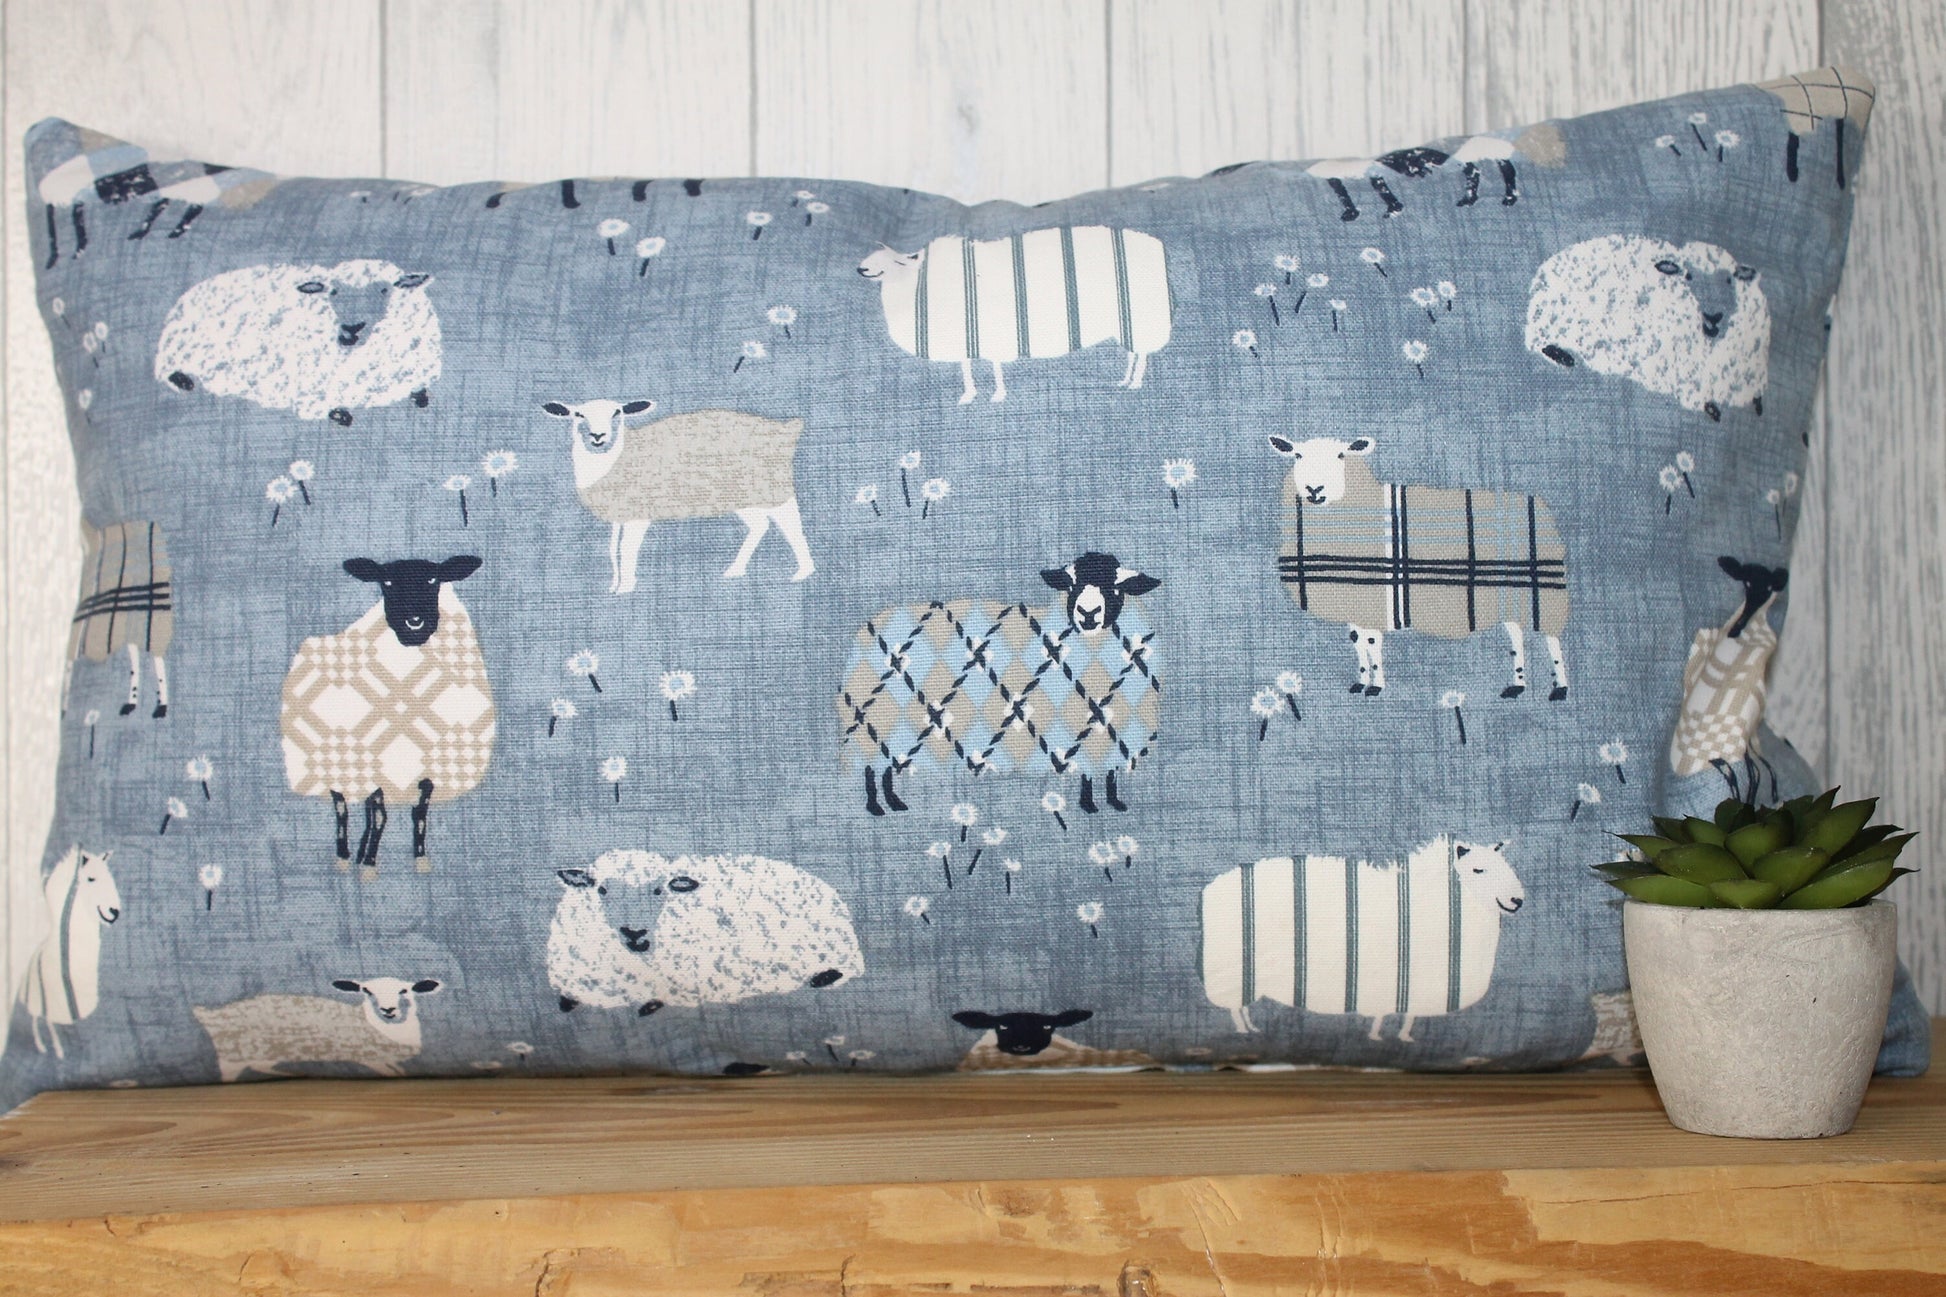 Sheep wearing jumpers-Cwtch Blue's woolly sheep jumper cushion- 20x12" Cushion Cover -Decorative cushion -Throw cushion